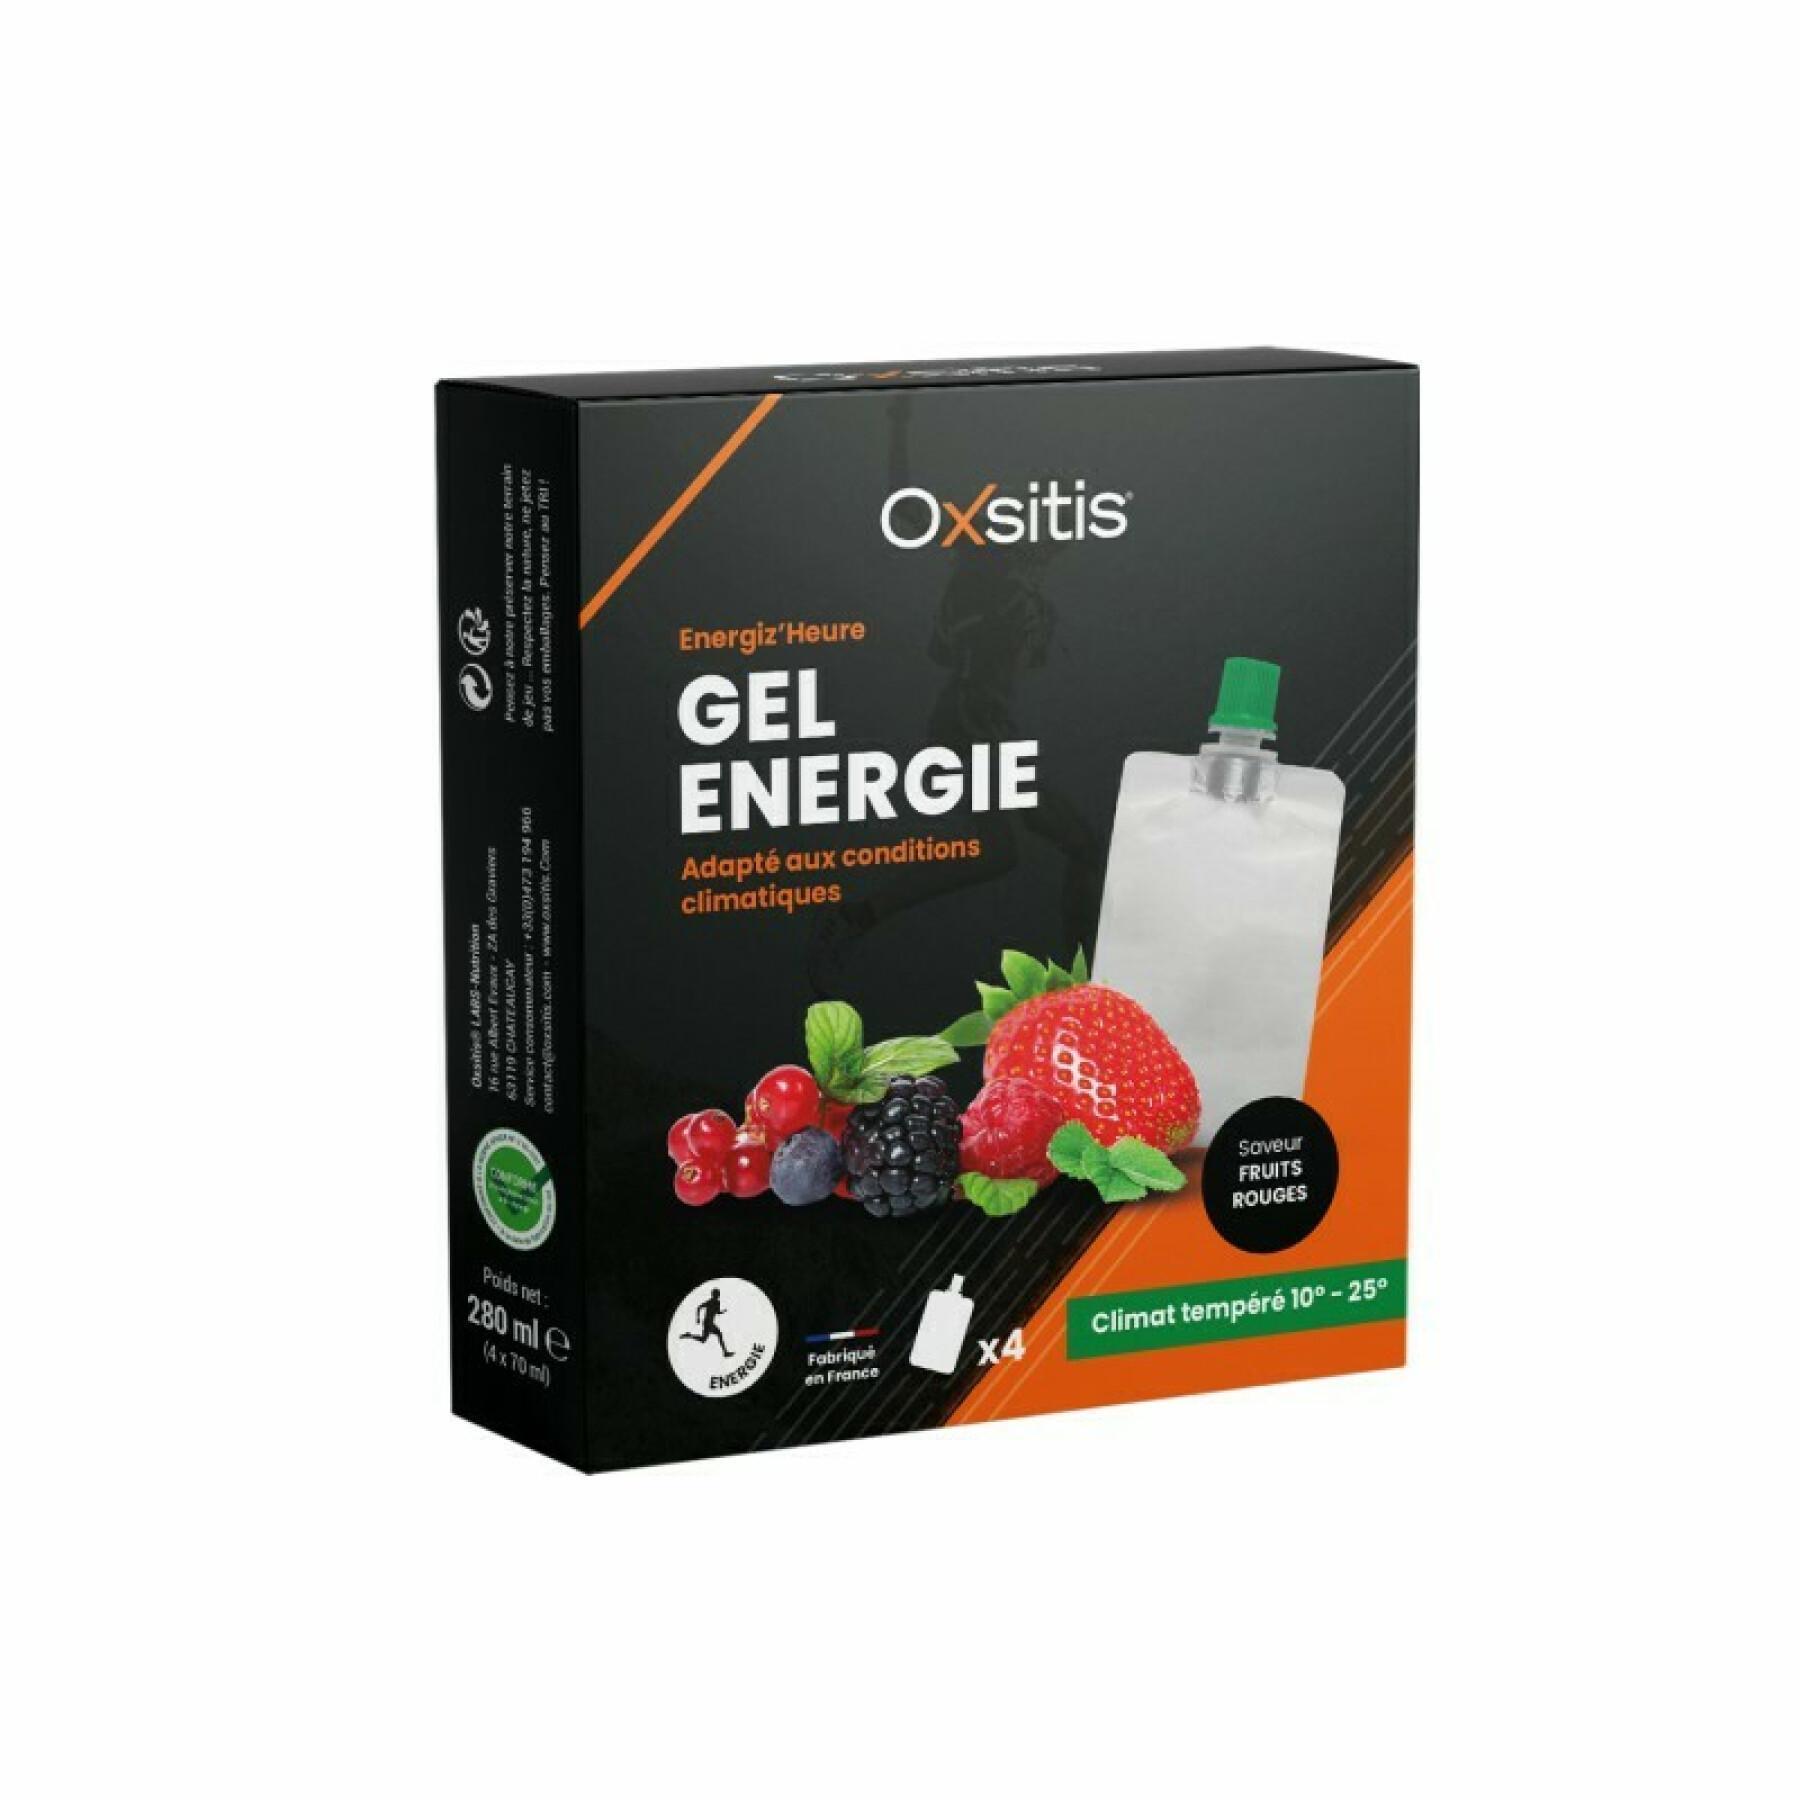 Energigel för tempererade klimat - röd frukt Oxsitis Energiz'heure